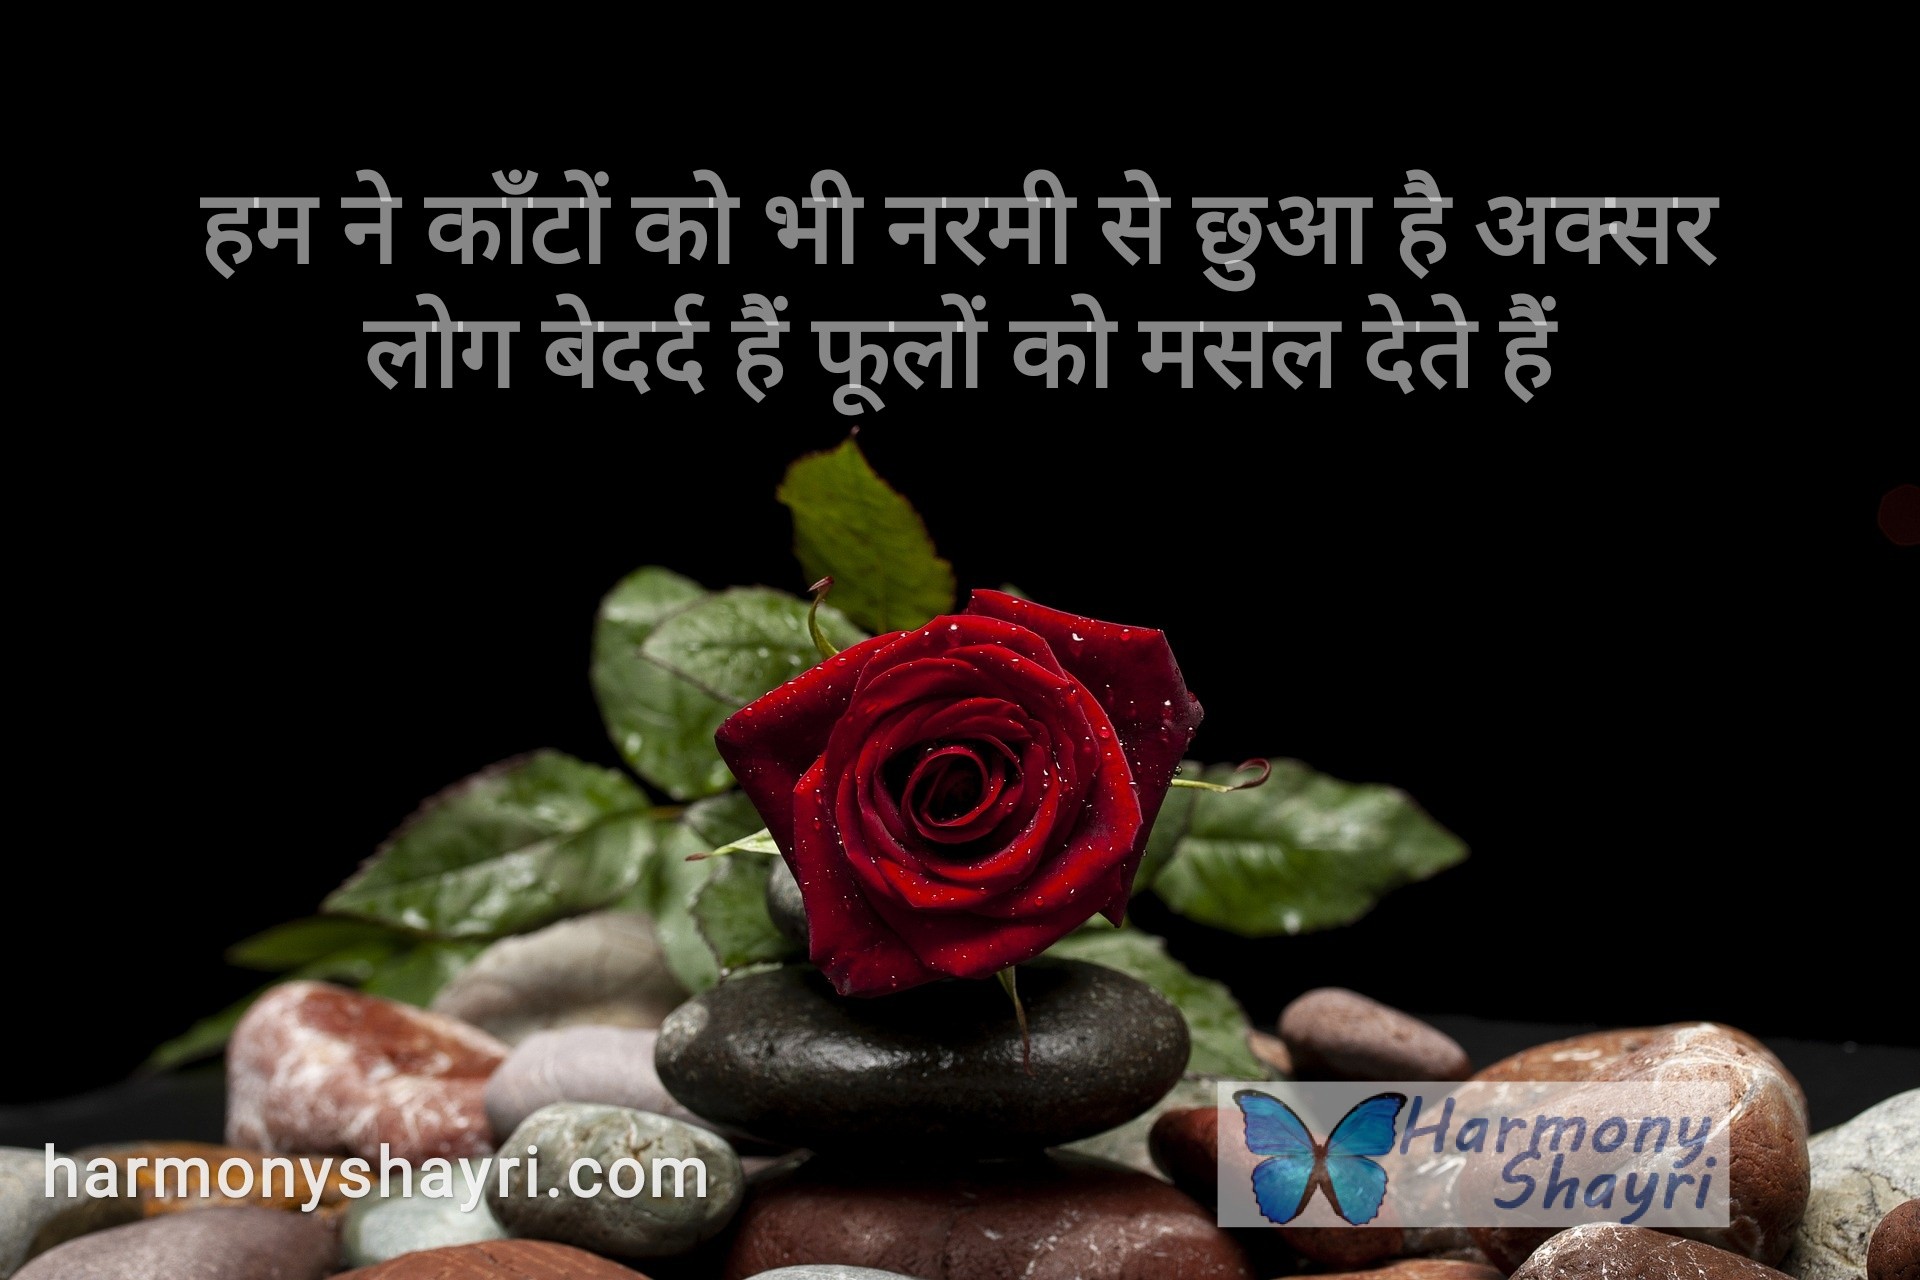 Hum ne kaanton ko bhi narmi – Happy Rose Day